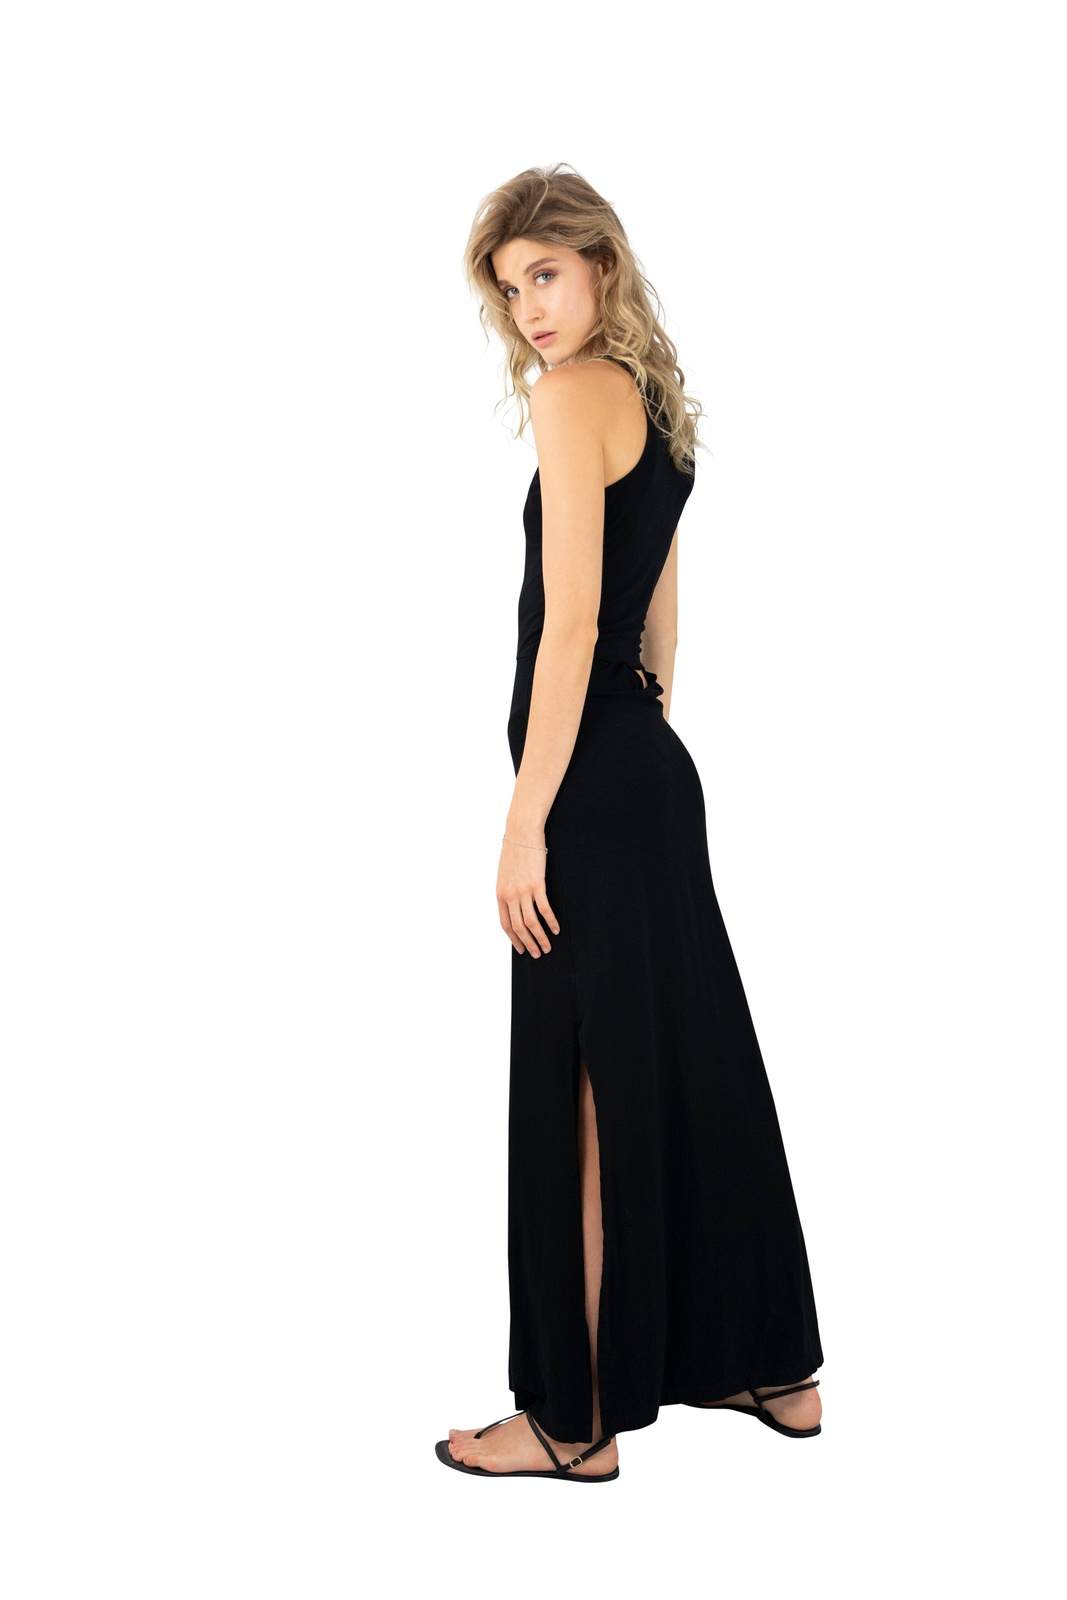 Womens Black Loungewear dress by Ekoluxe Best Sustainable Fashion Brands